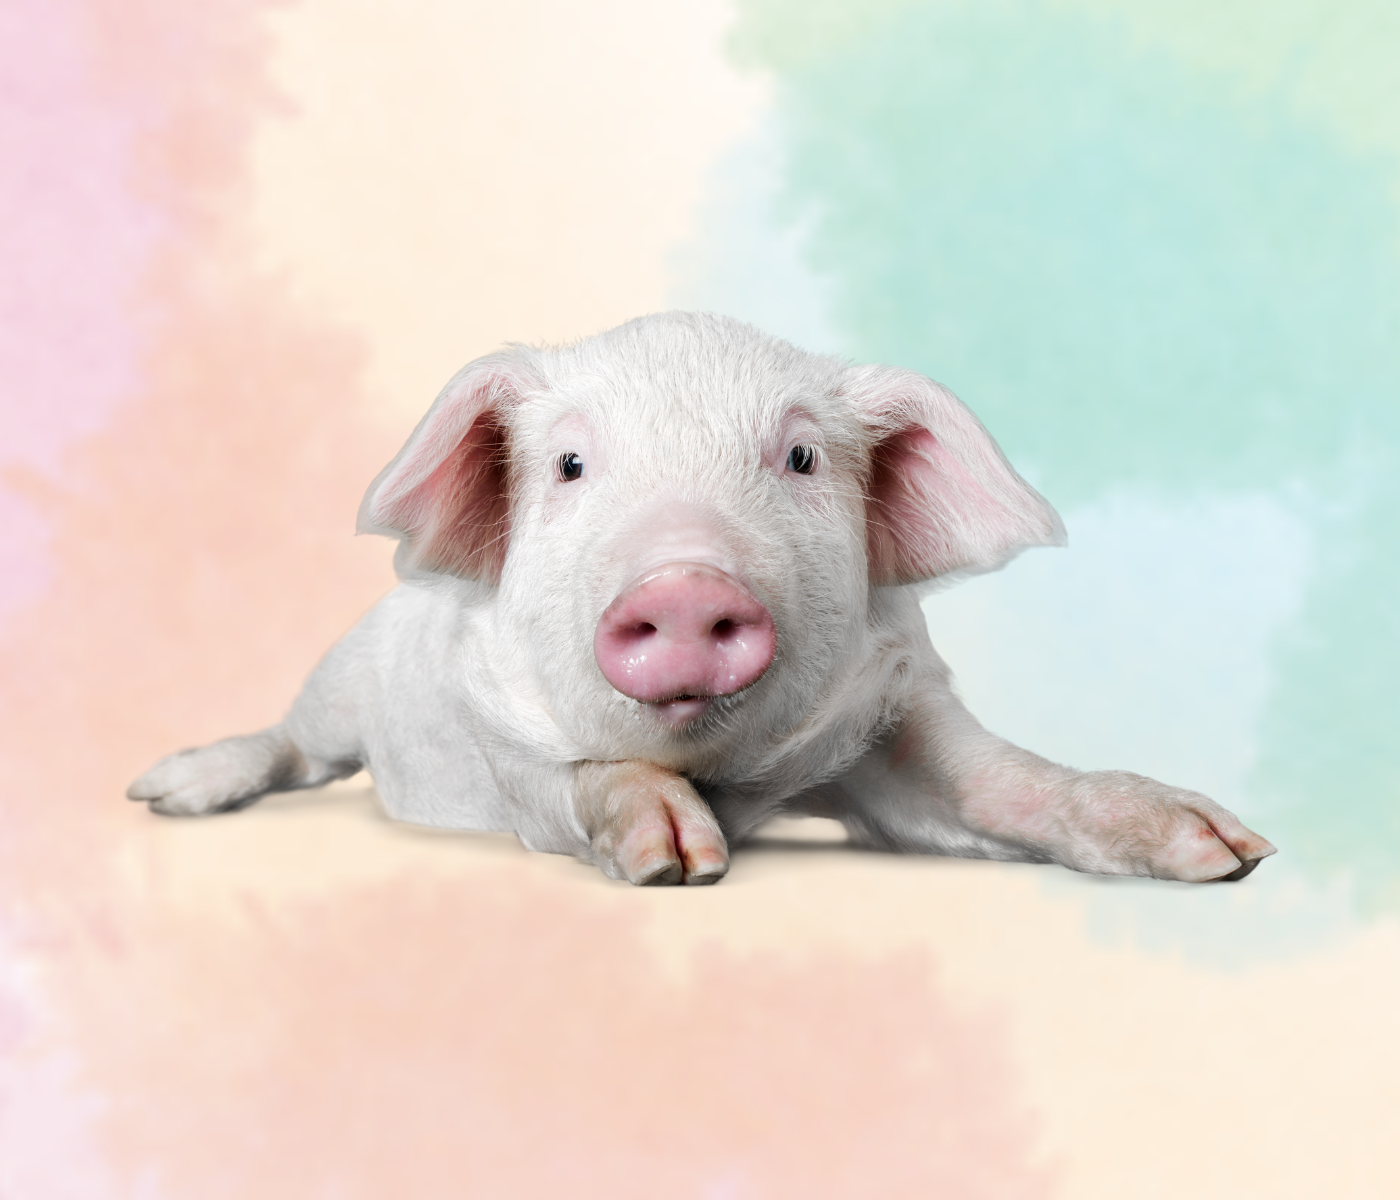 Relación entre el uso de antibióticos preventivos y el bienestar de cerdos destetados